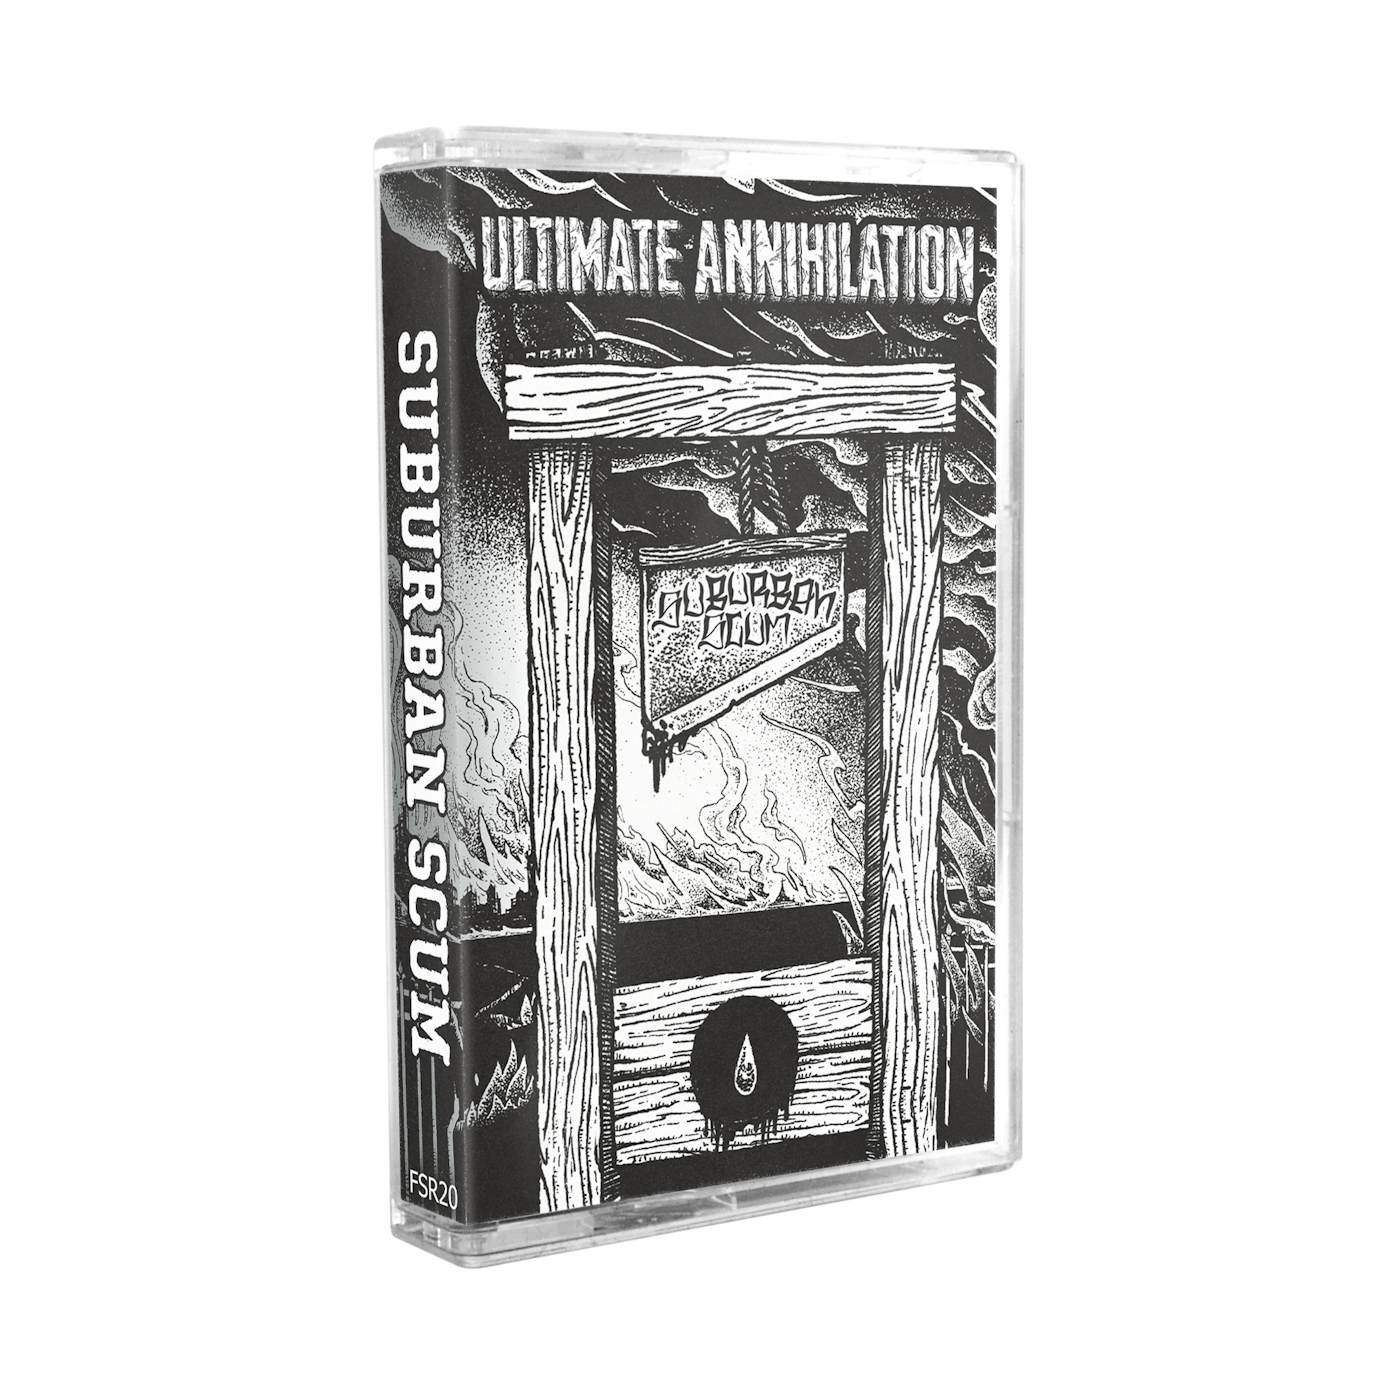 Suburban Scum - Ultimate Annihilation Cassette